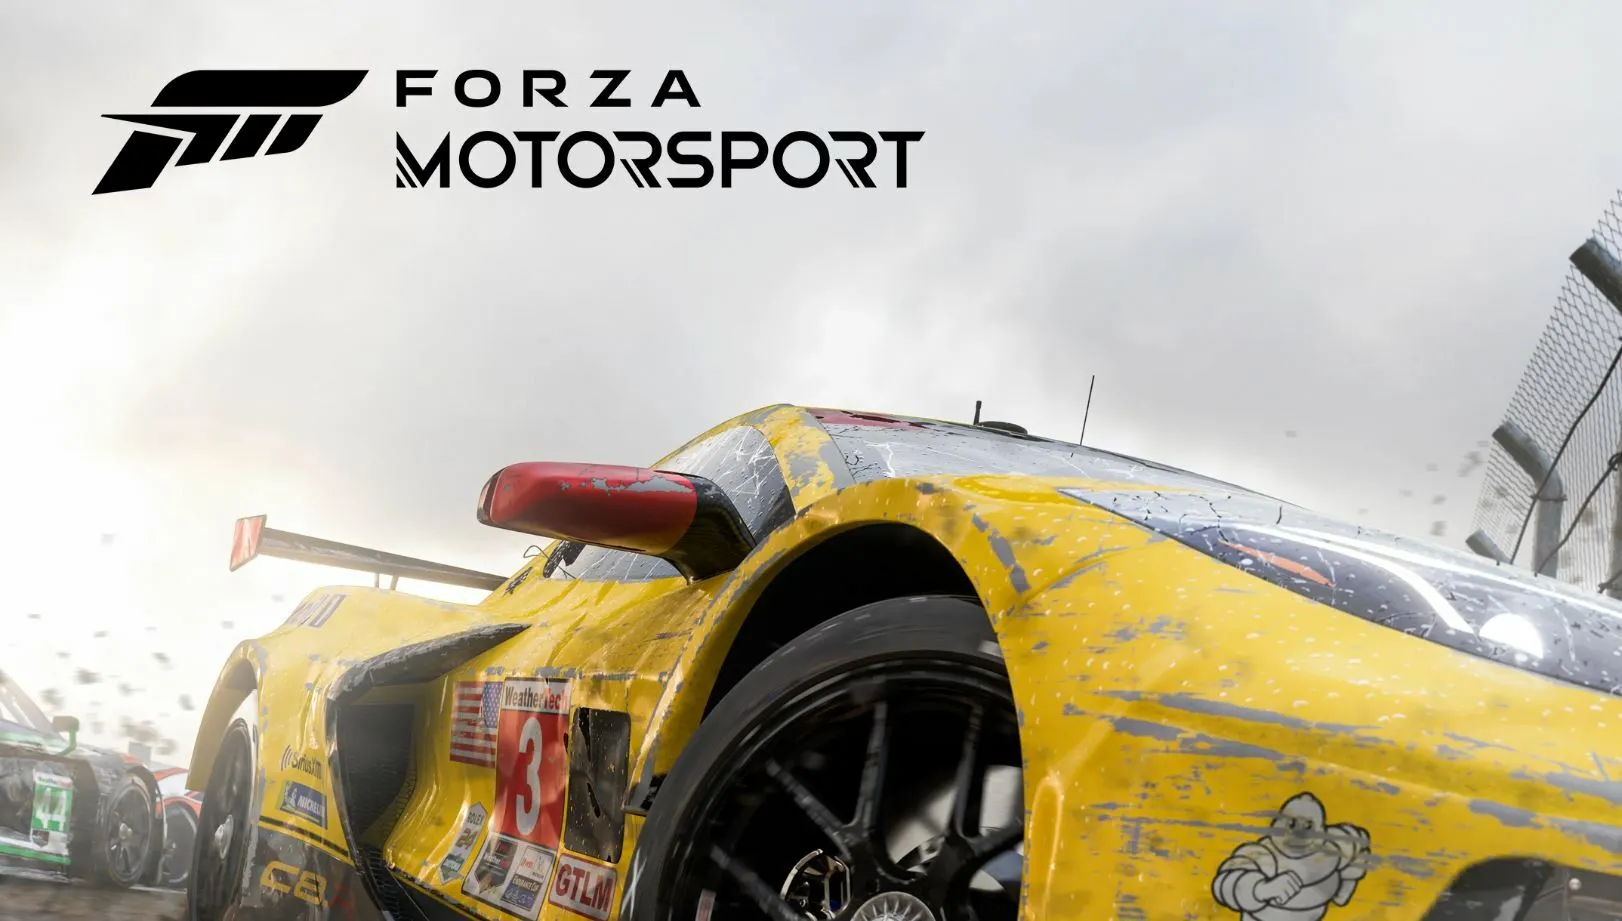 اطلاعاتی از بازی Forza Motorsport منتشر شد.